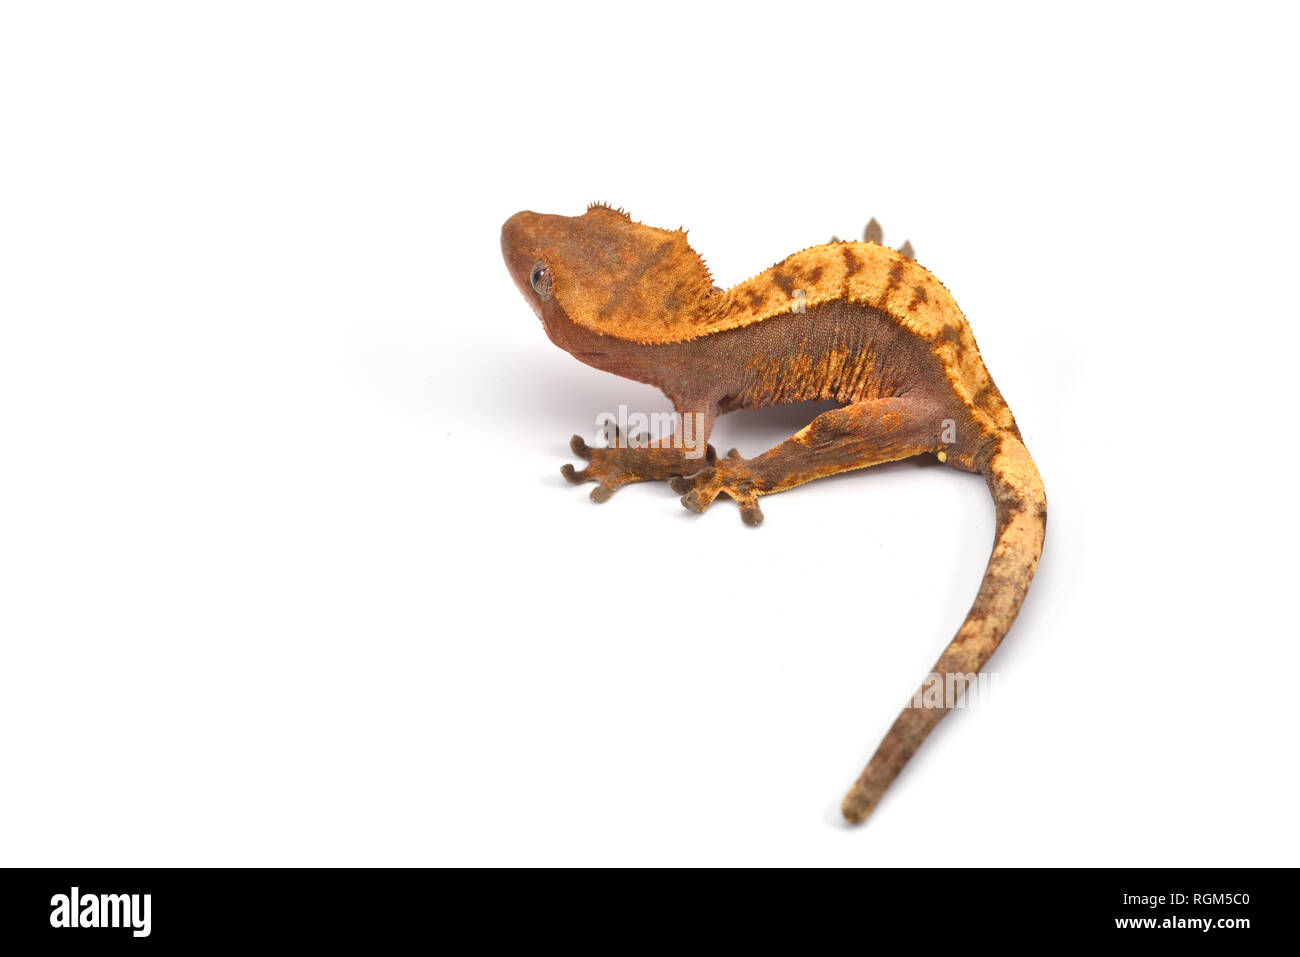 Crested gecko isolati su sfondo bianco Foto Stock